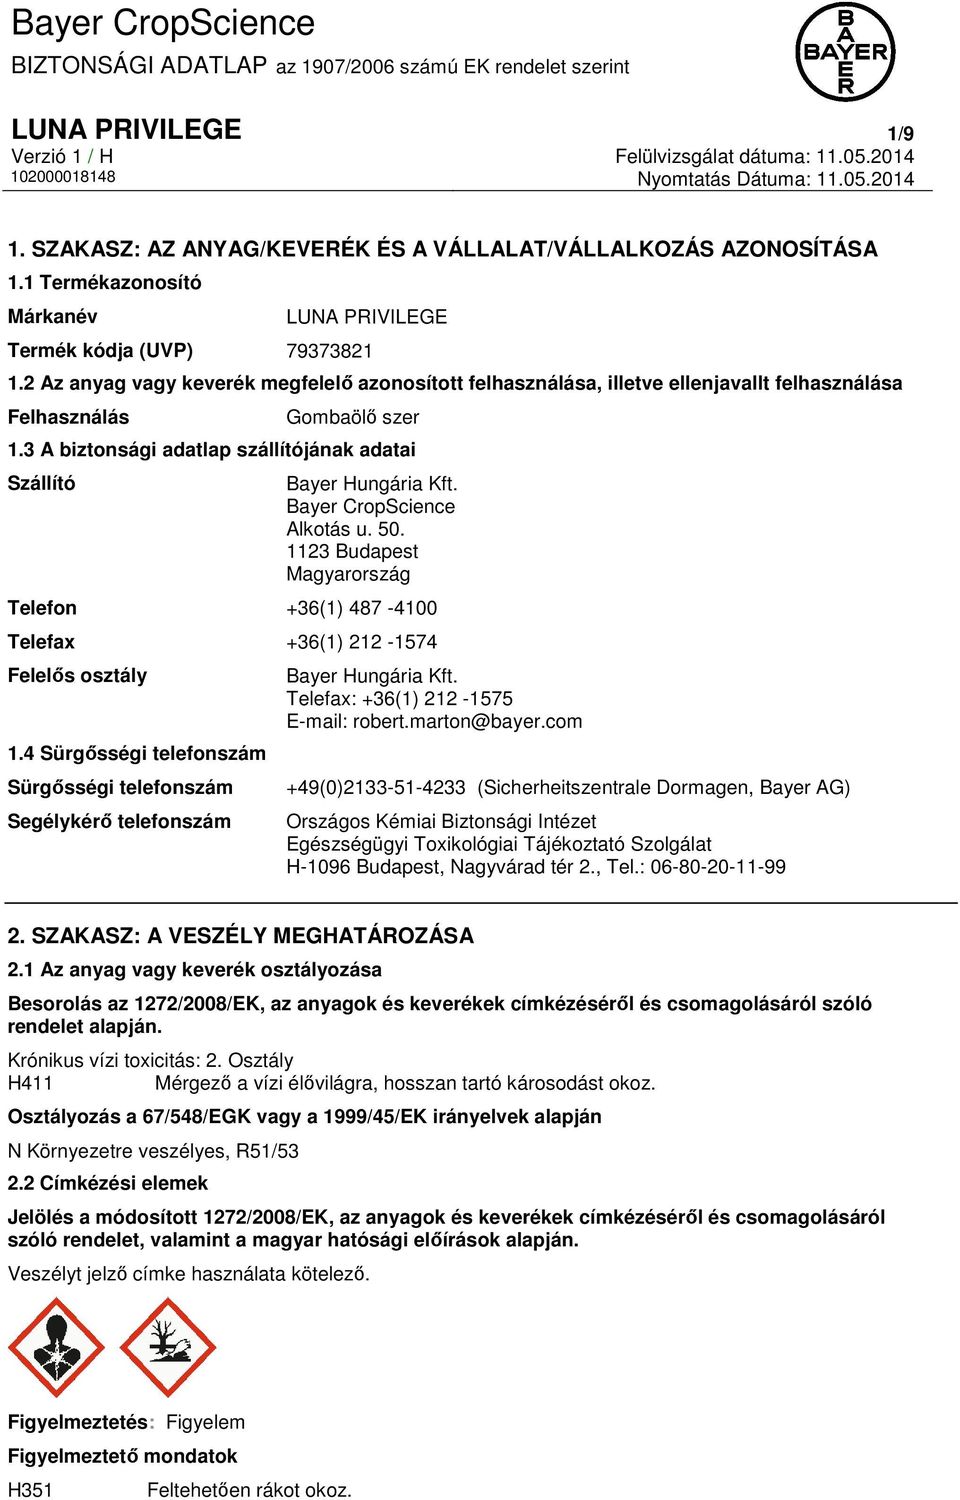 Bayer CropScience Alkotás u. 50. 1123 Budapest Magyarország Telefon +36(1) 487-4100 Telefax +36(1) 212-1574 Felelős osztály 1.